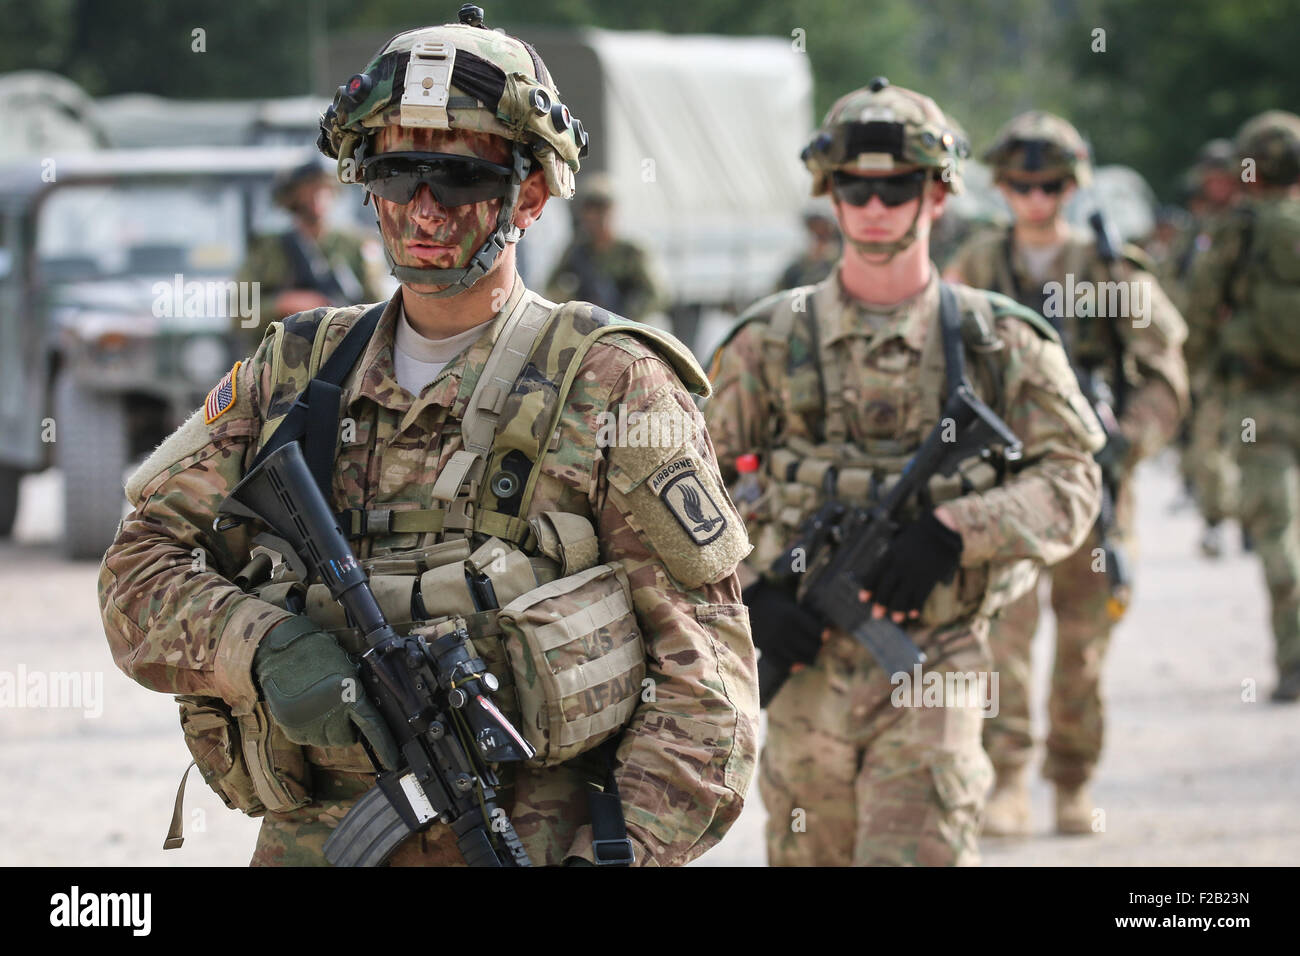 US Army 173rd Airborne Brigade Soldaten gehen Sie in das Feld zur Teilnahme an Übung Sofortreaktion 14. September 2015 in Slunj, Kroatien. Sofortige Reaktion ist eine multinationale Bereich Trainingsübung in Kroatien und Slowenien. Stockfoto